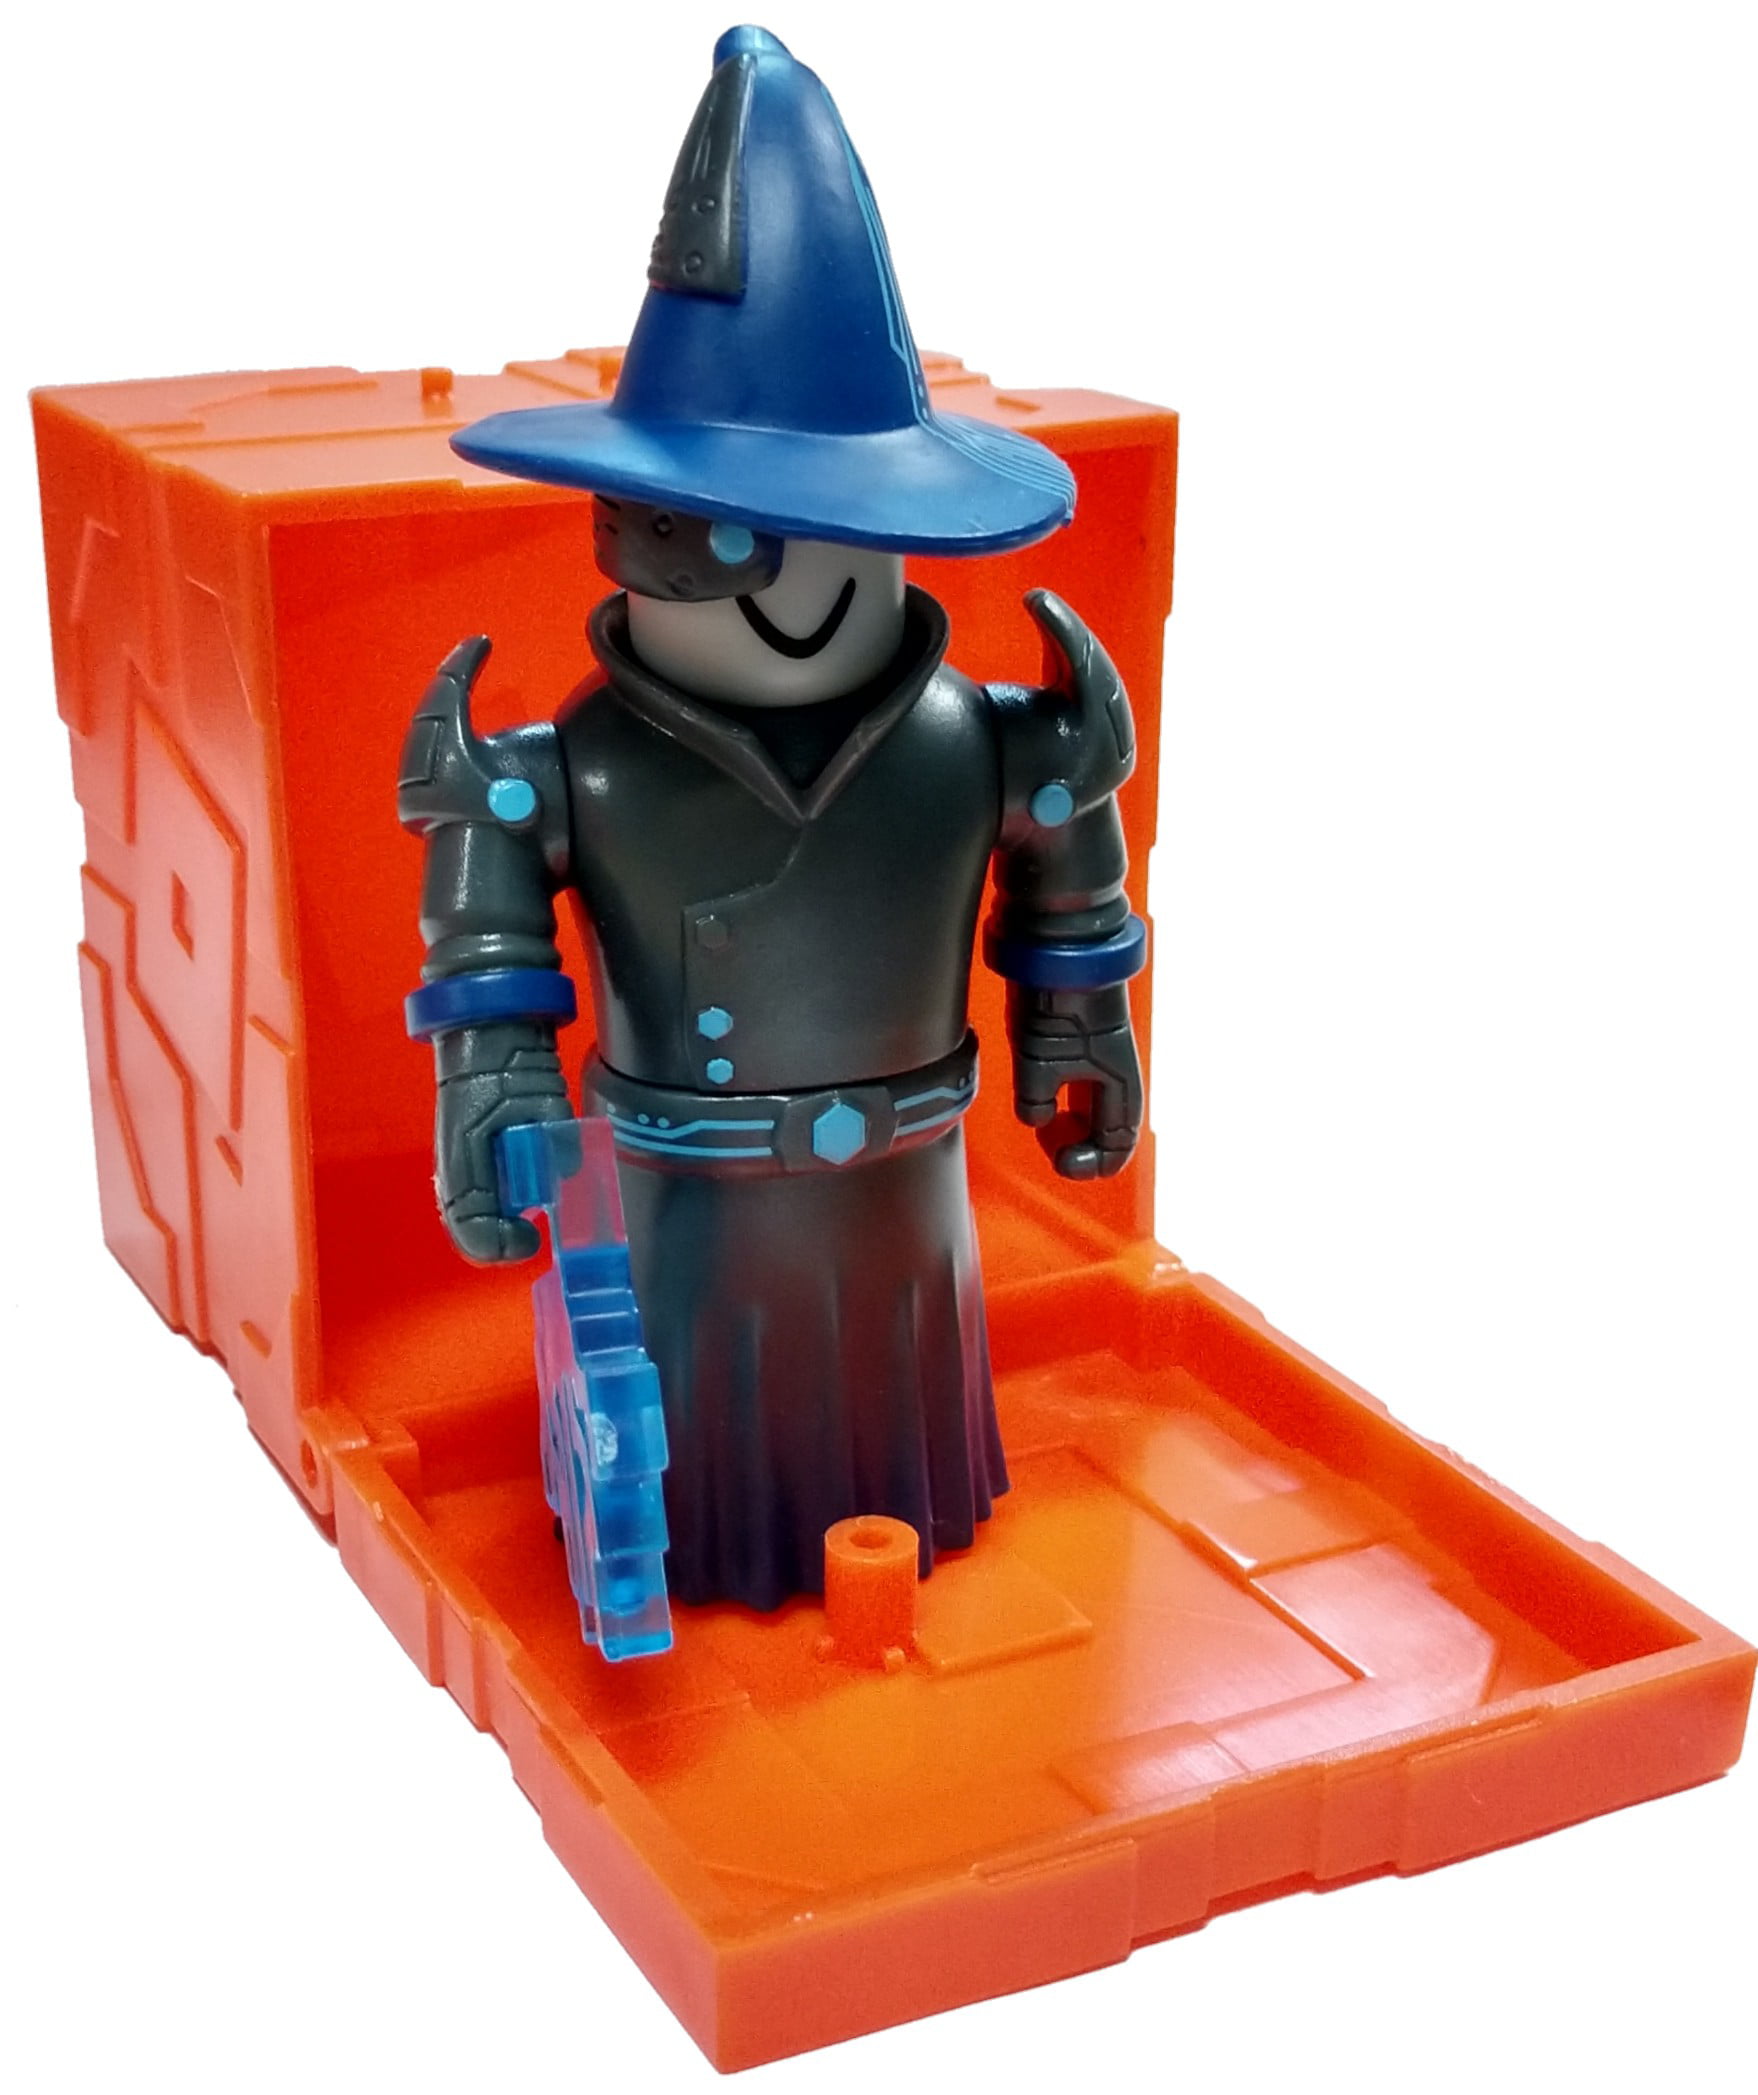 Roblox Series 6 Techno Wizard Mini Figure With Orange Cube And